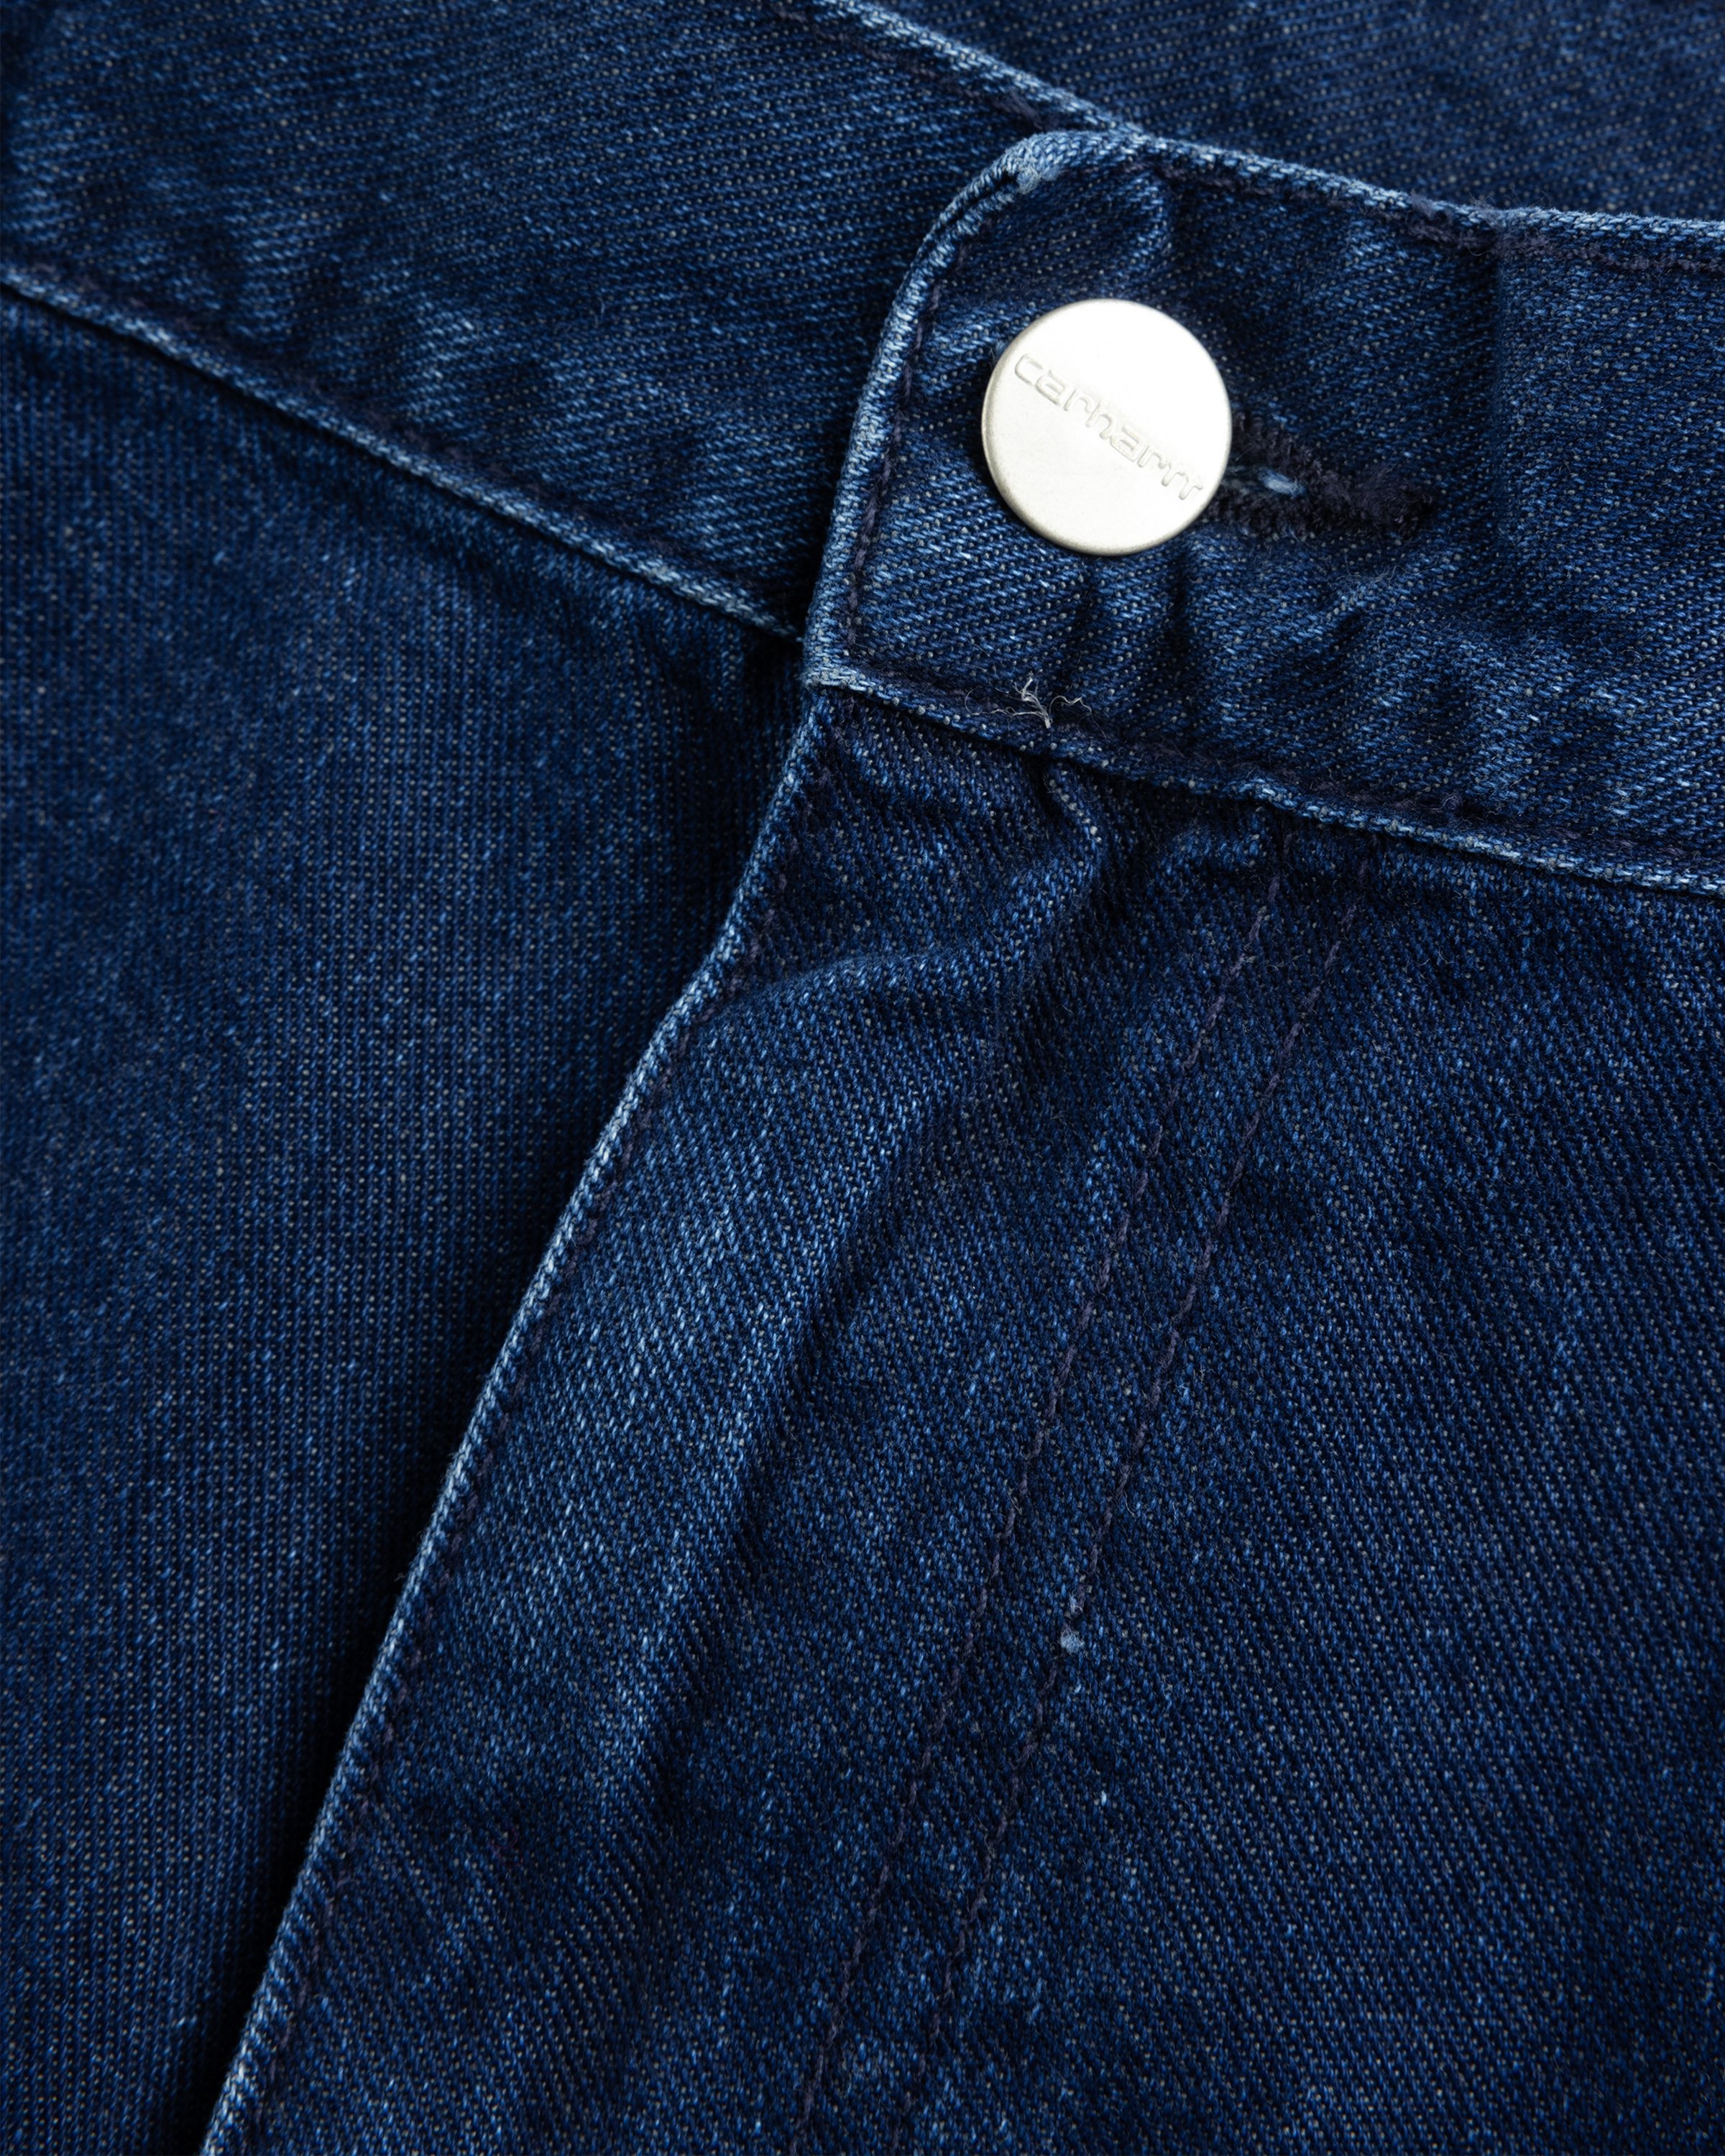 Carhartt WIP - OG Single Knee Pant Blue /stone washed - Clothing - Blue - Image 6